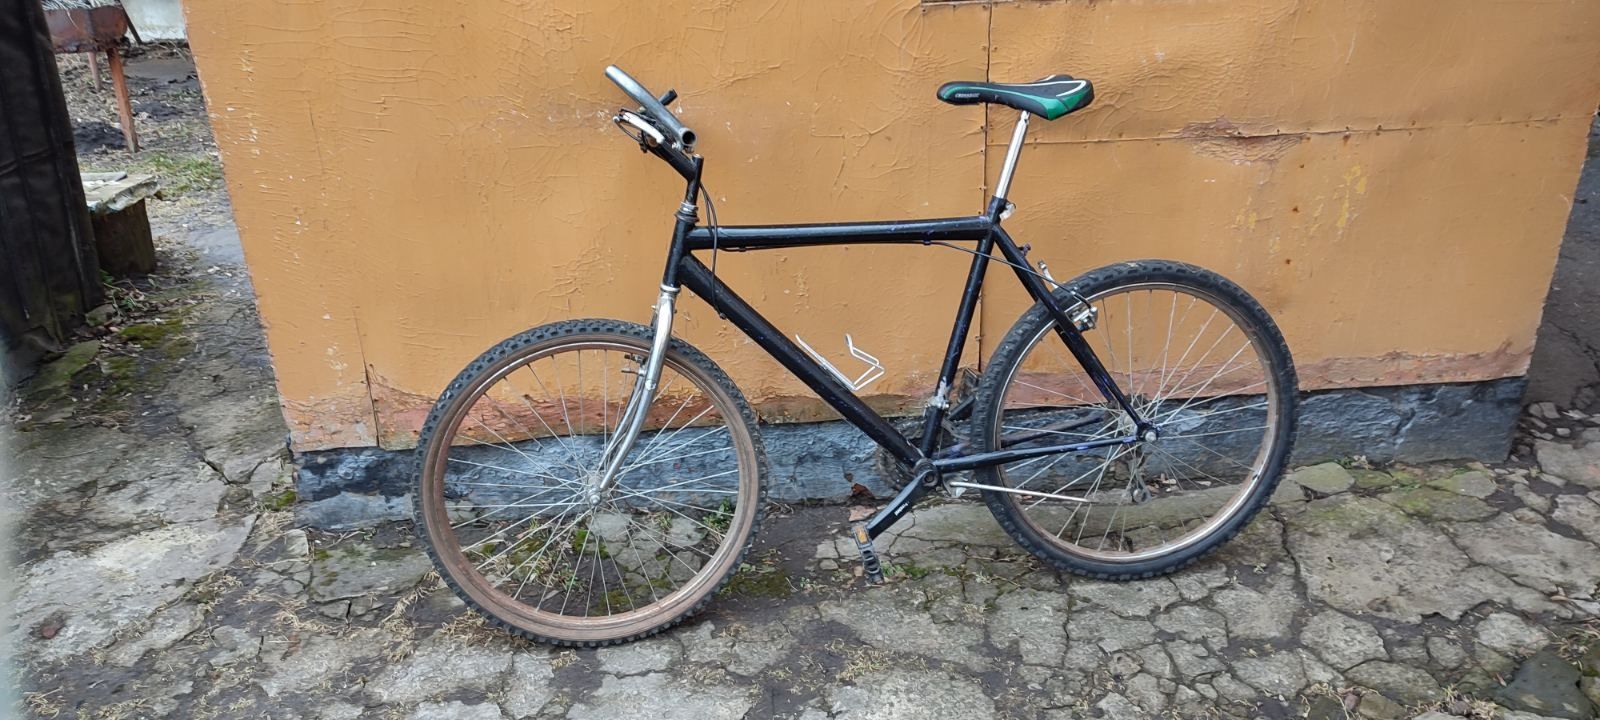 Продам велосипед Ardis bn750